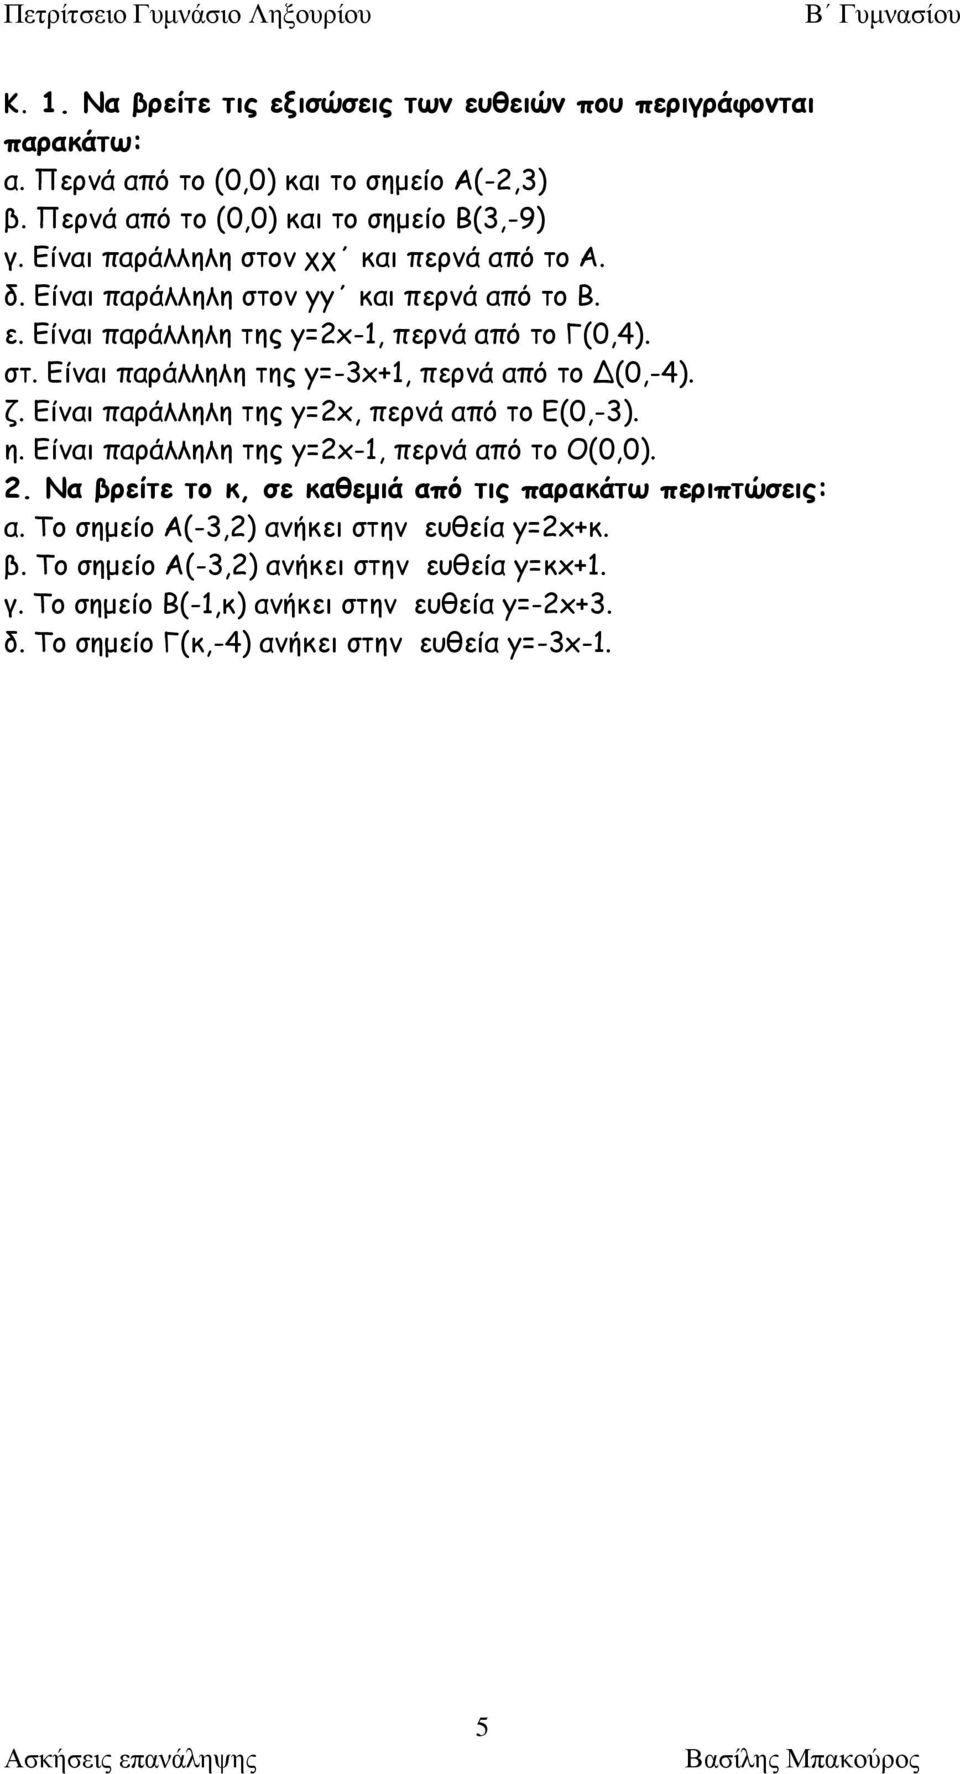 ζ. Είναι παράλληλη της y=x, περνά από το Ε(0,-). η. Είναι παράλληλη της y=x-1, περνά από το Ο(0,0).. Να βρείτε το κ, σε καθεμιά από τις παρακάτω περιπτώσεις: α.